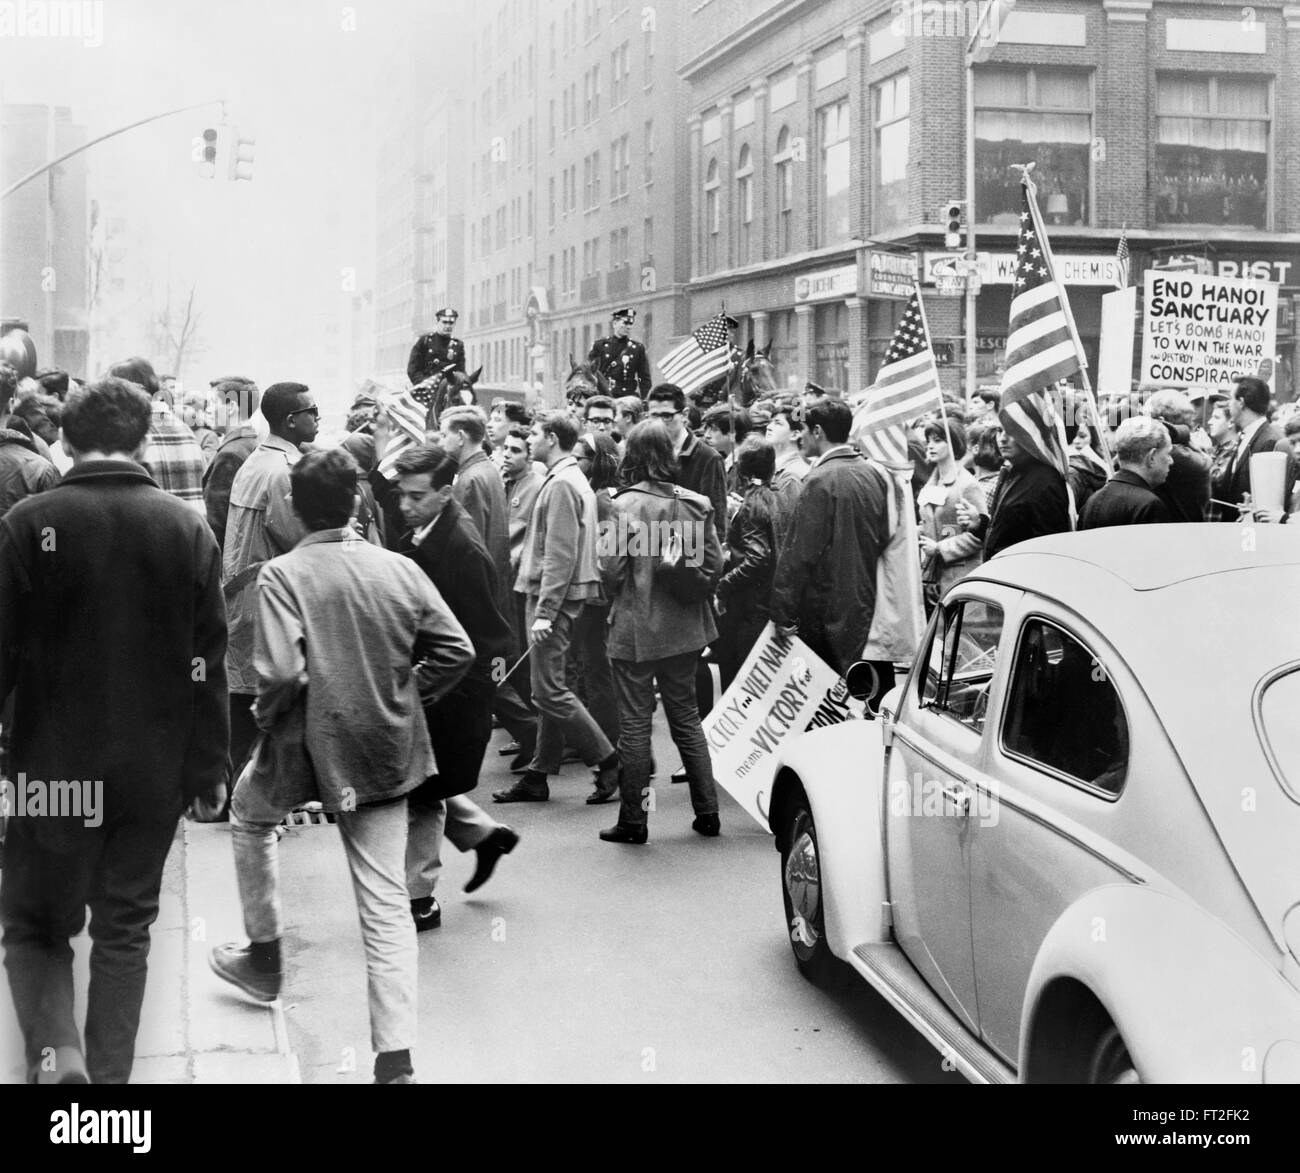 Pro Unterstützer der Vietnam-Krieg auf den Straßen von New York. Foto von Matthew Black, 1967 Stockfoto